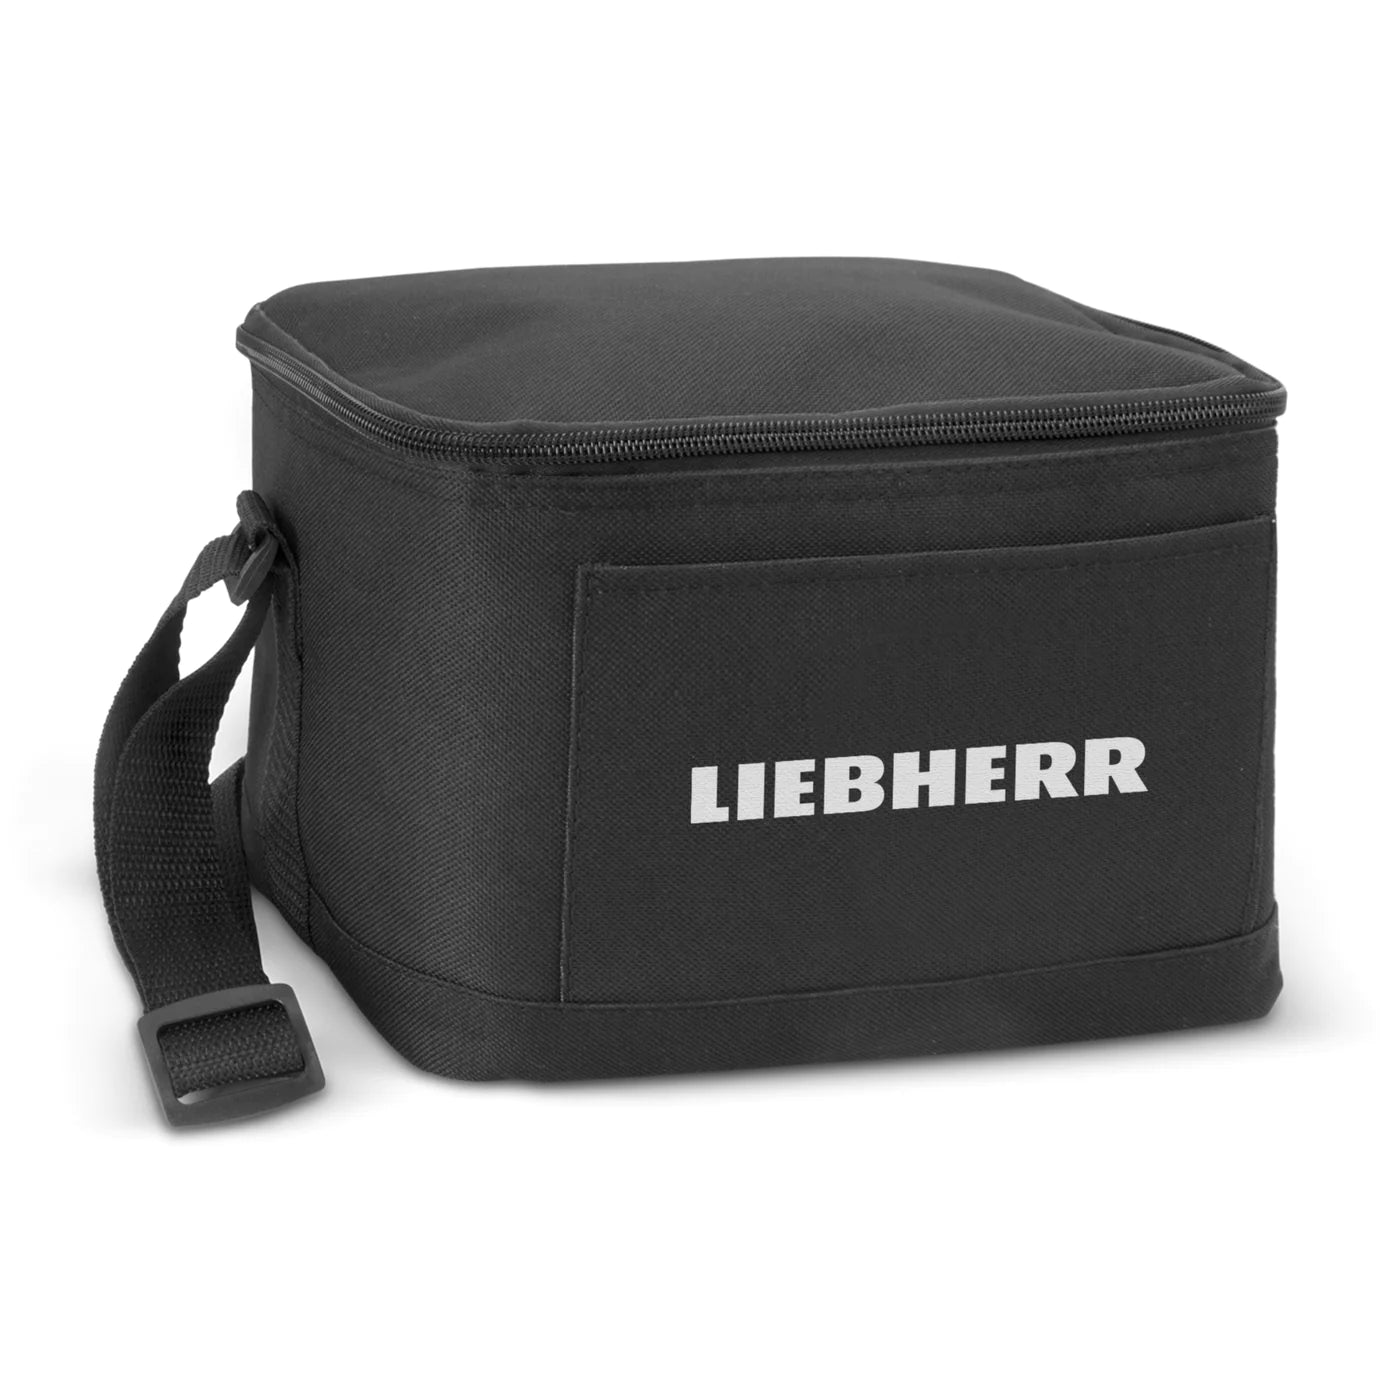 LIEBHERR - Cooler Bag